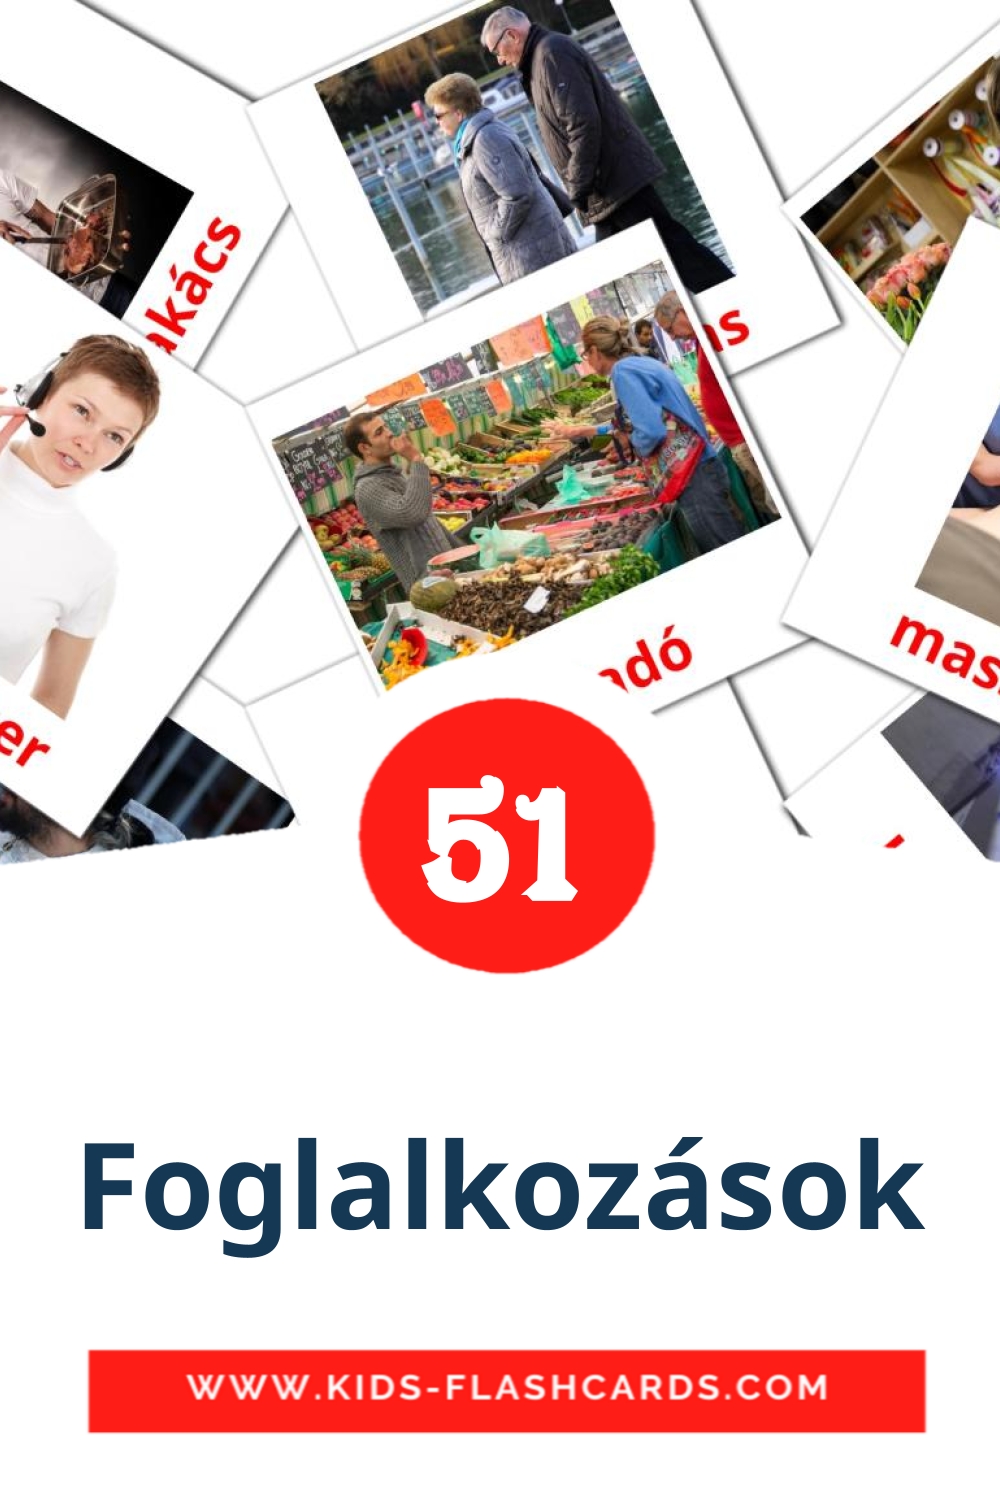 51 tarjetas didacticas de Foglalkozások para el jardín de infancia en húngaro